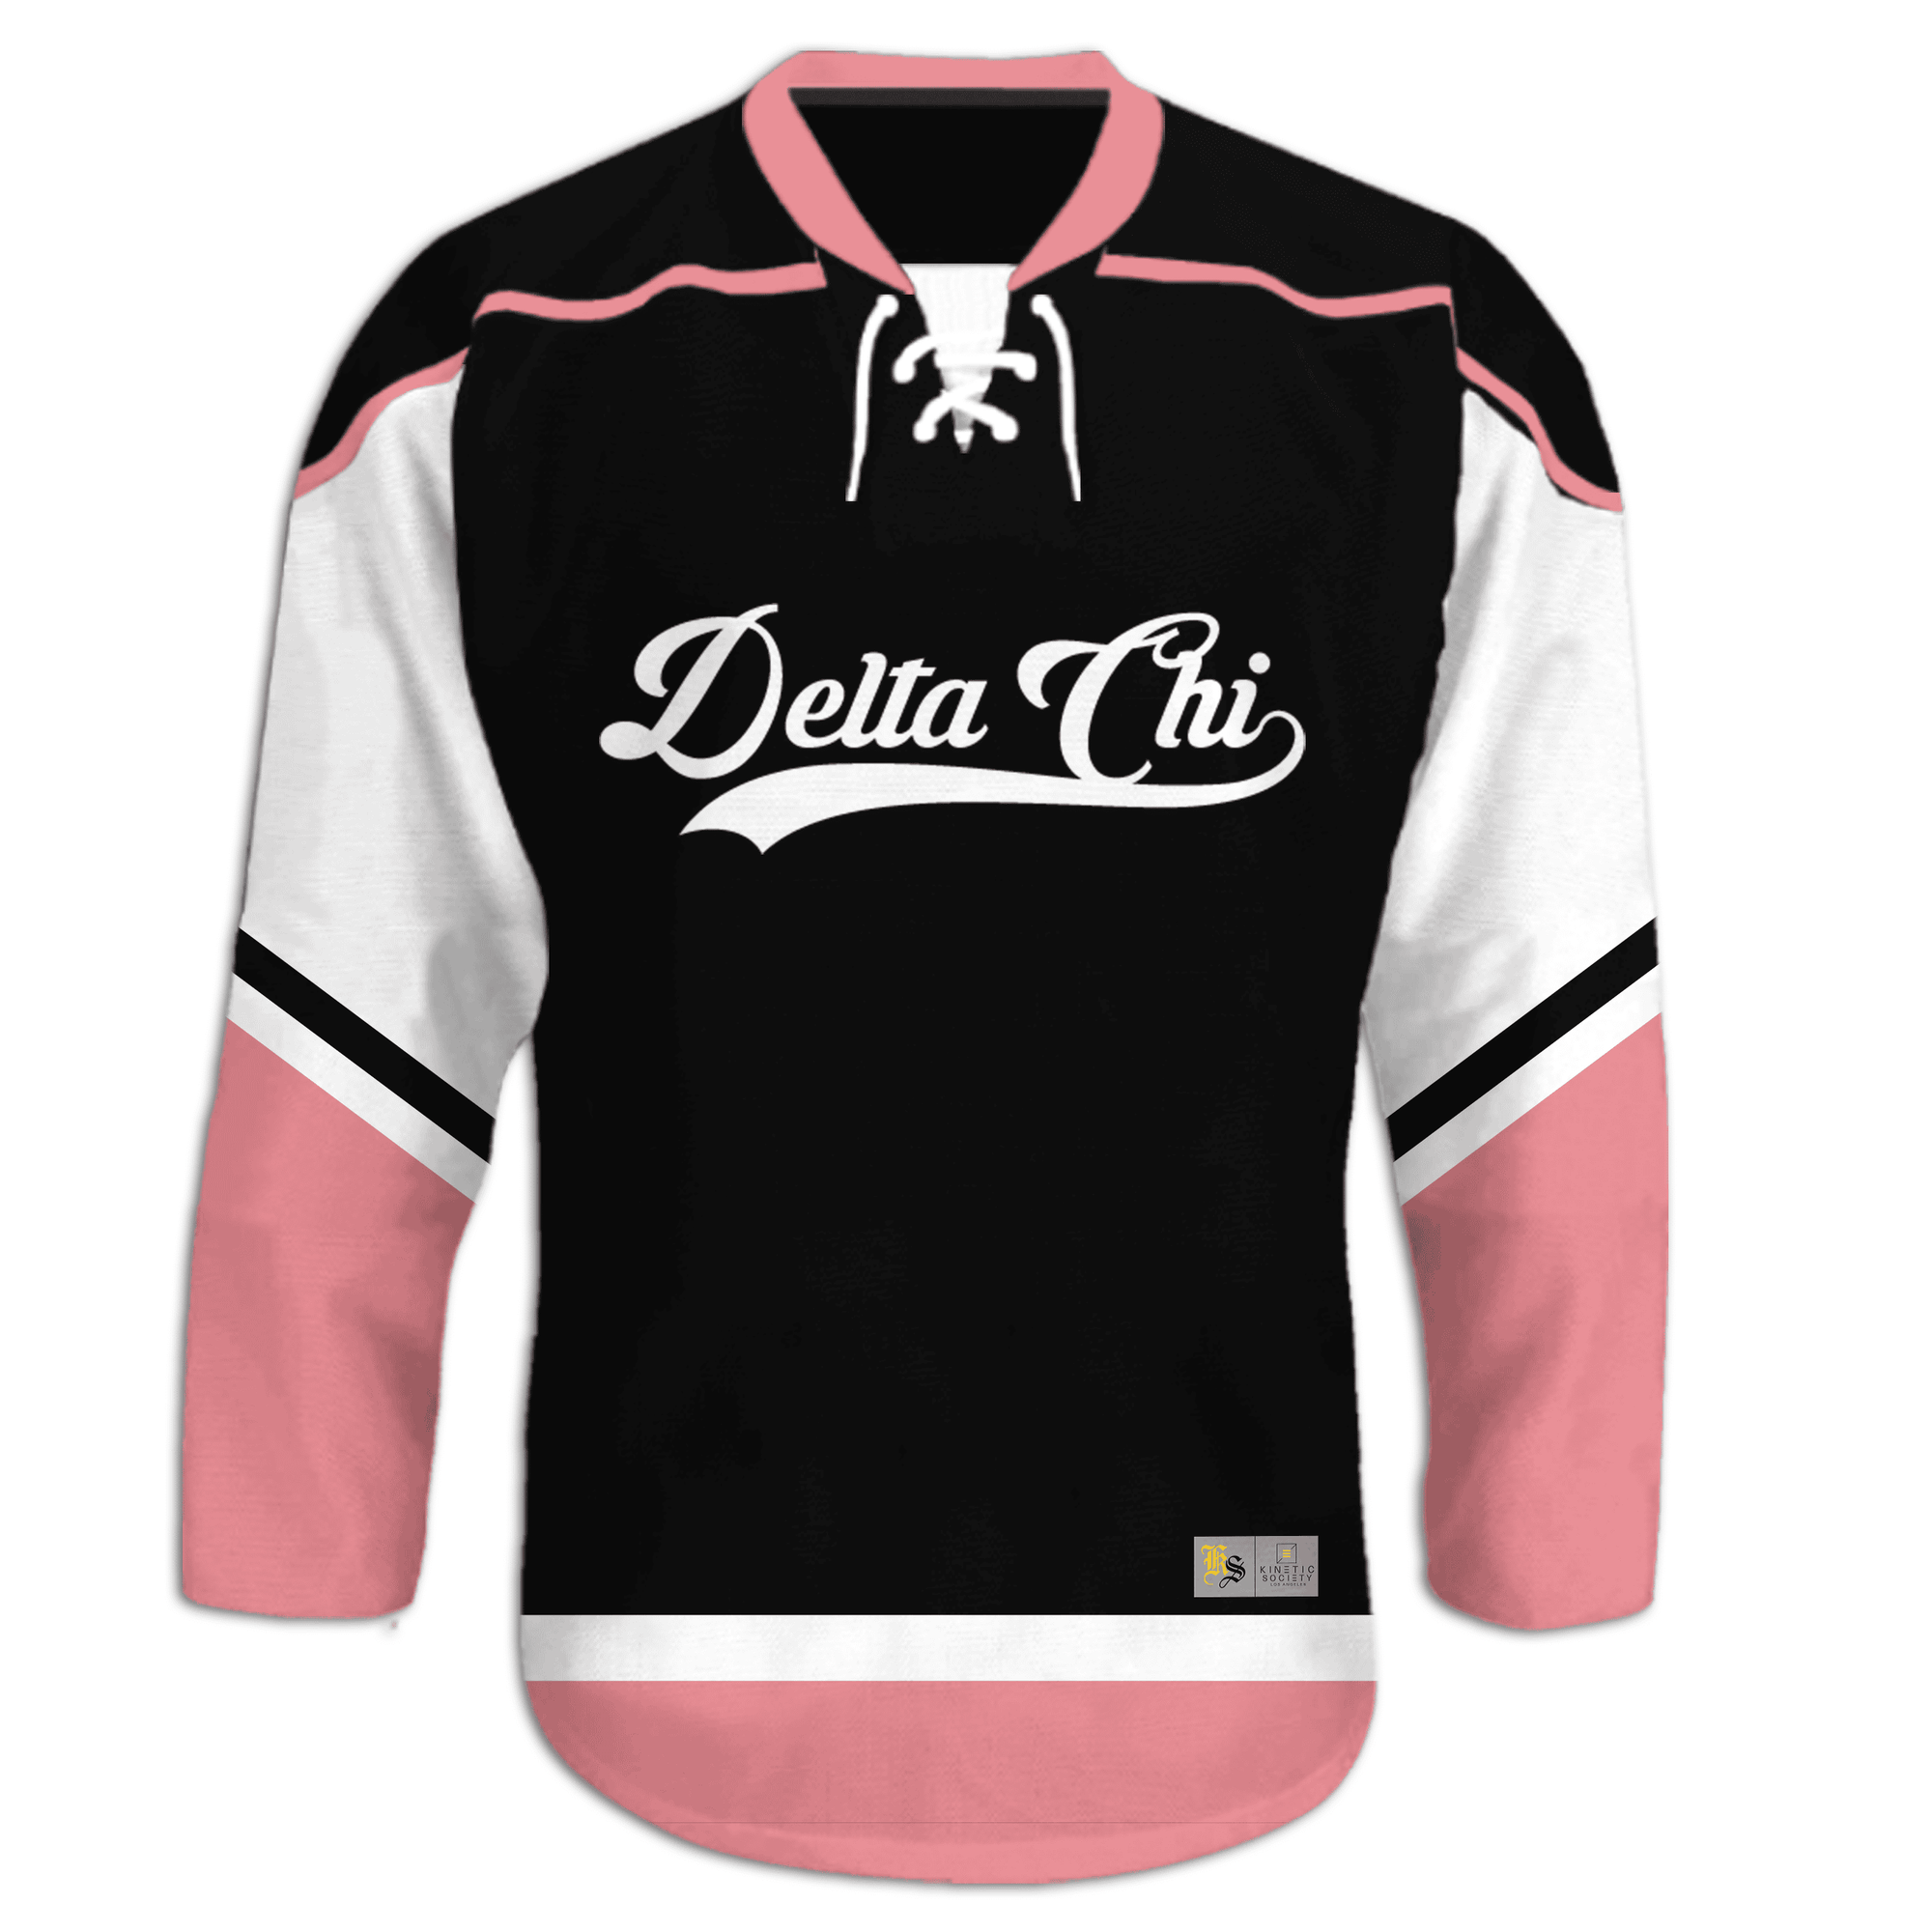 Delta Chi - Black Pink - Hockey Jersey